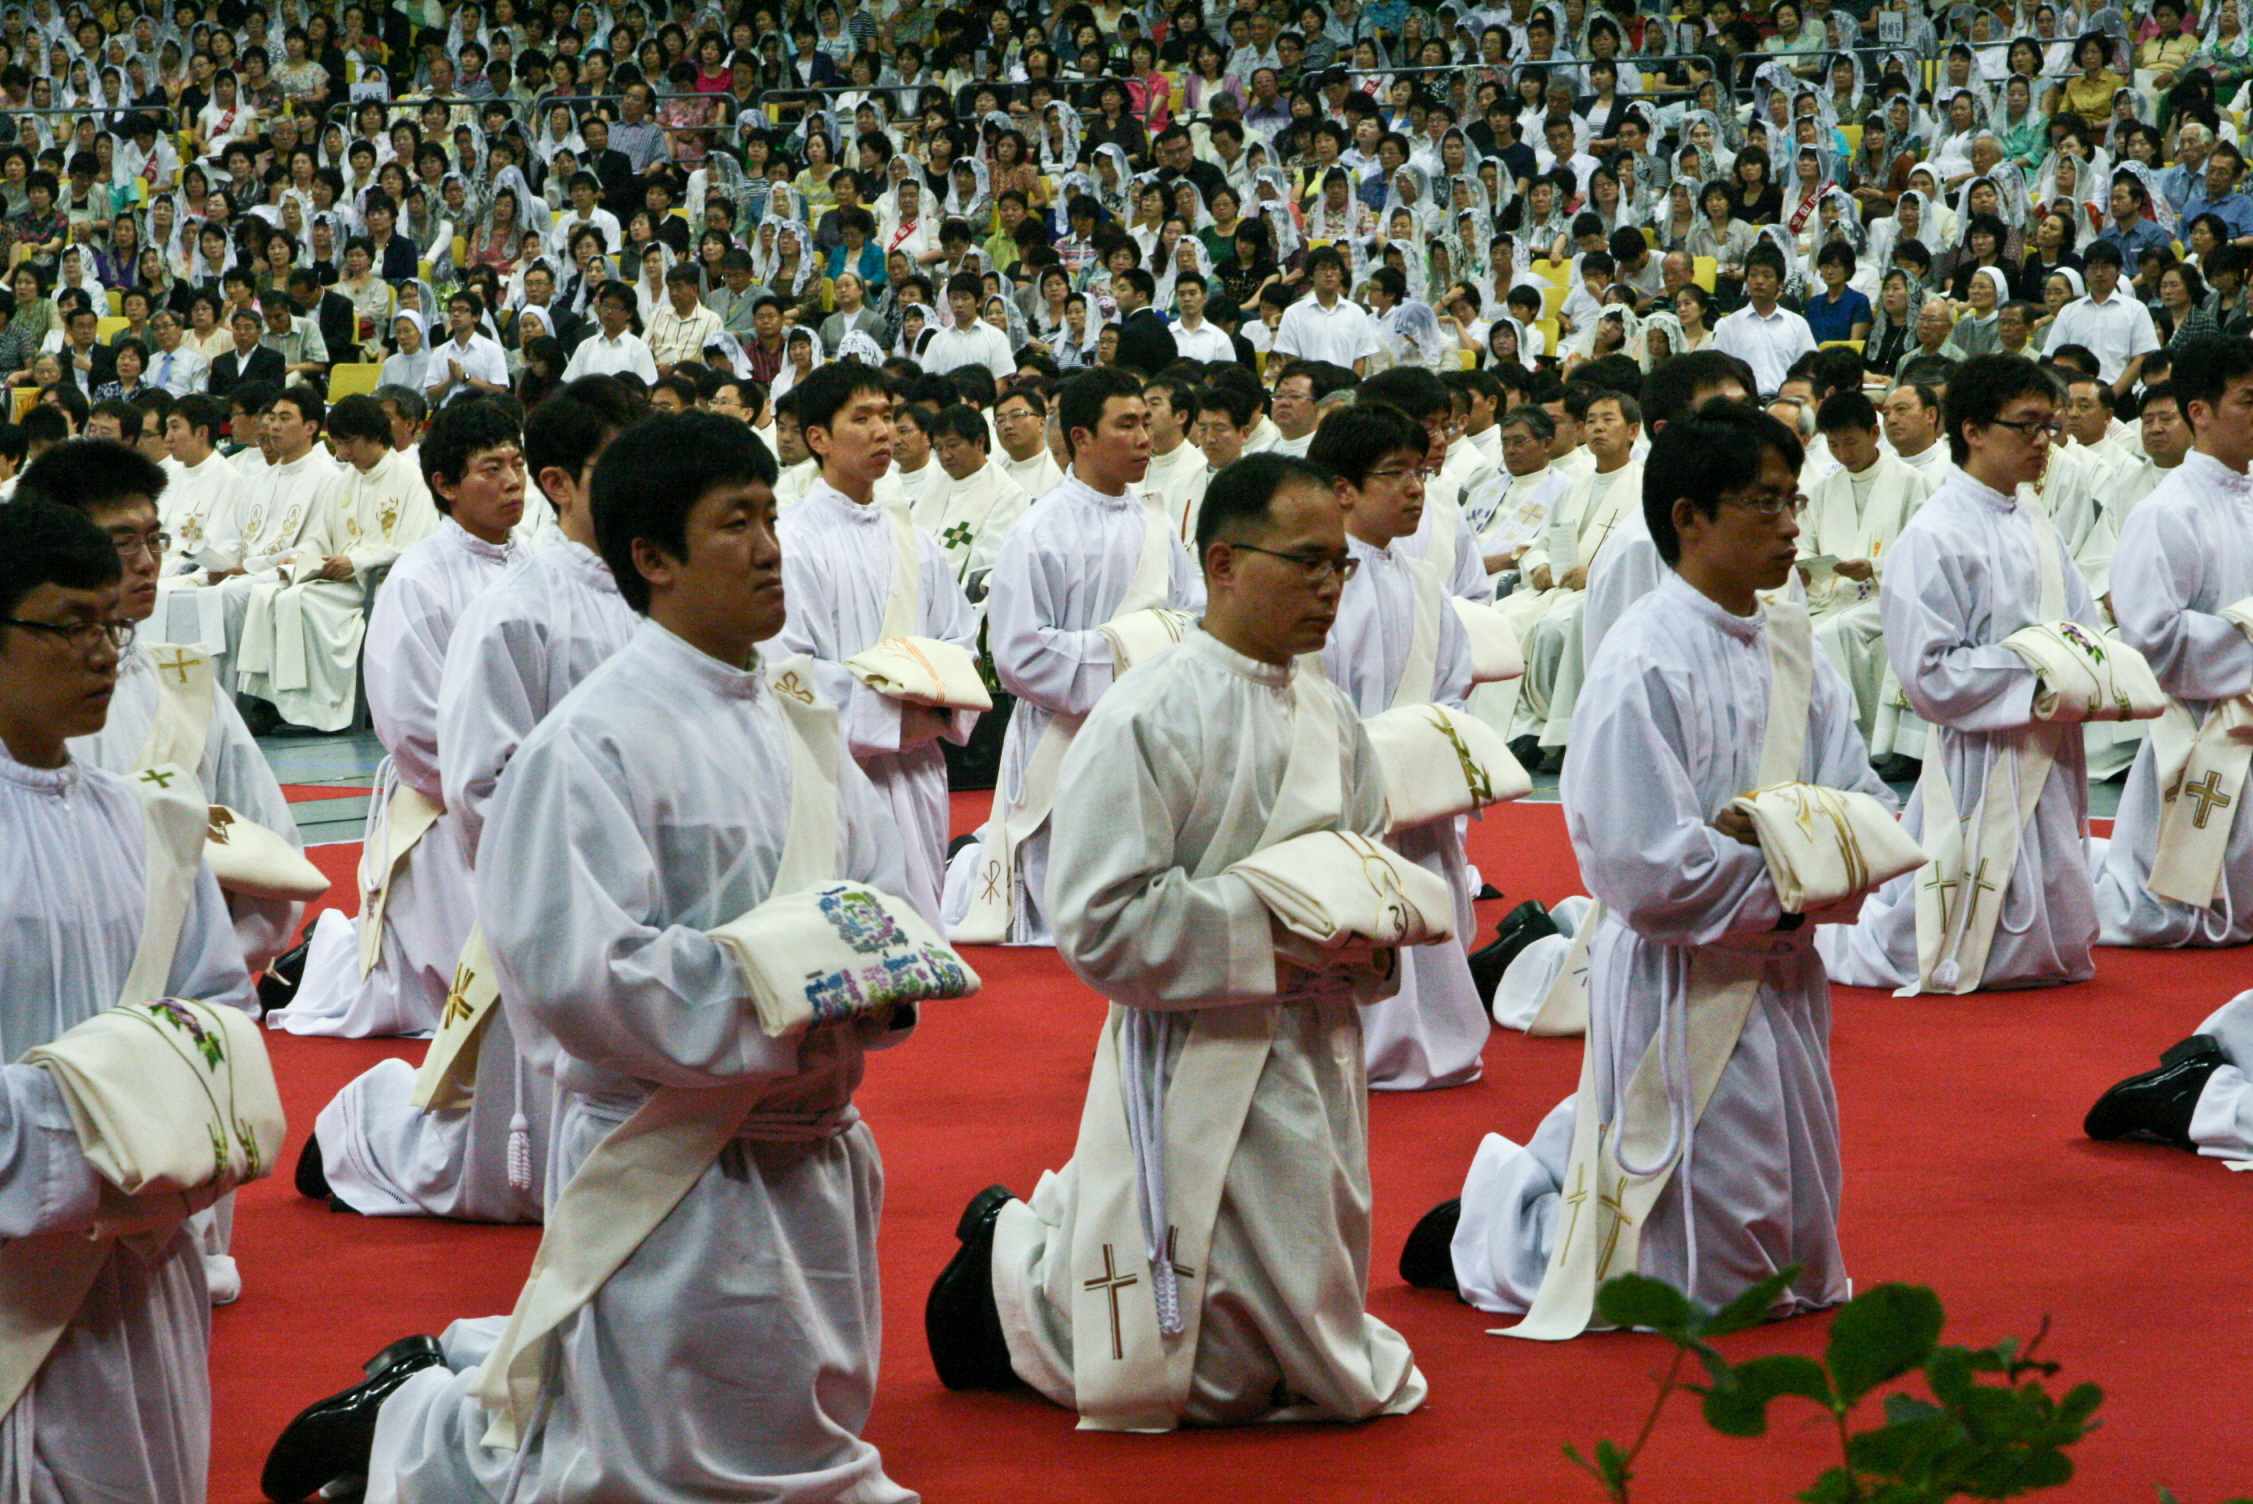 서울대교구 사제서품식(2009.6.26)의 관련된 이미지 입니다.